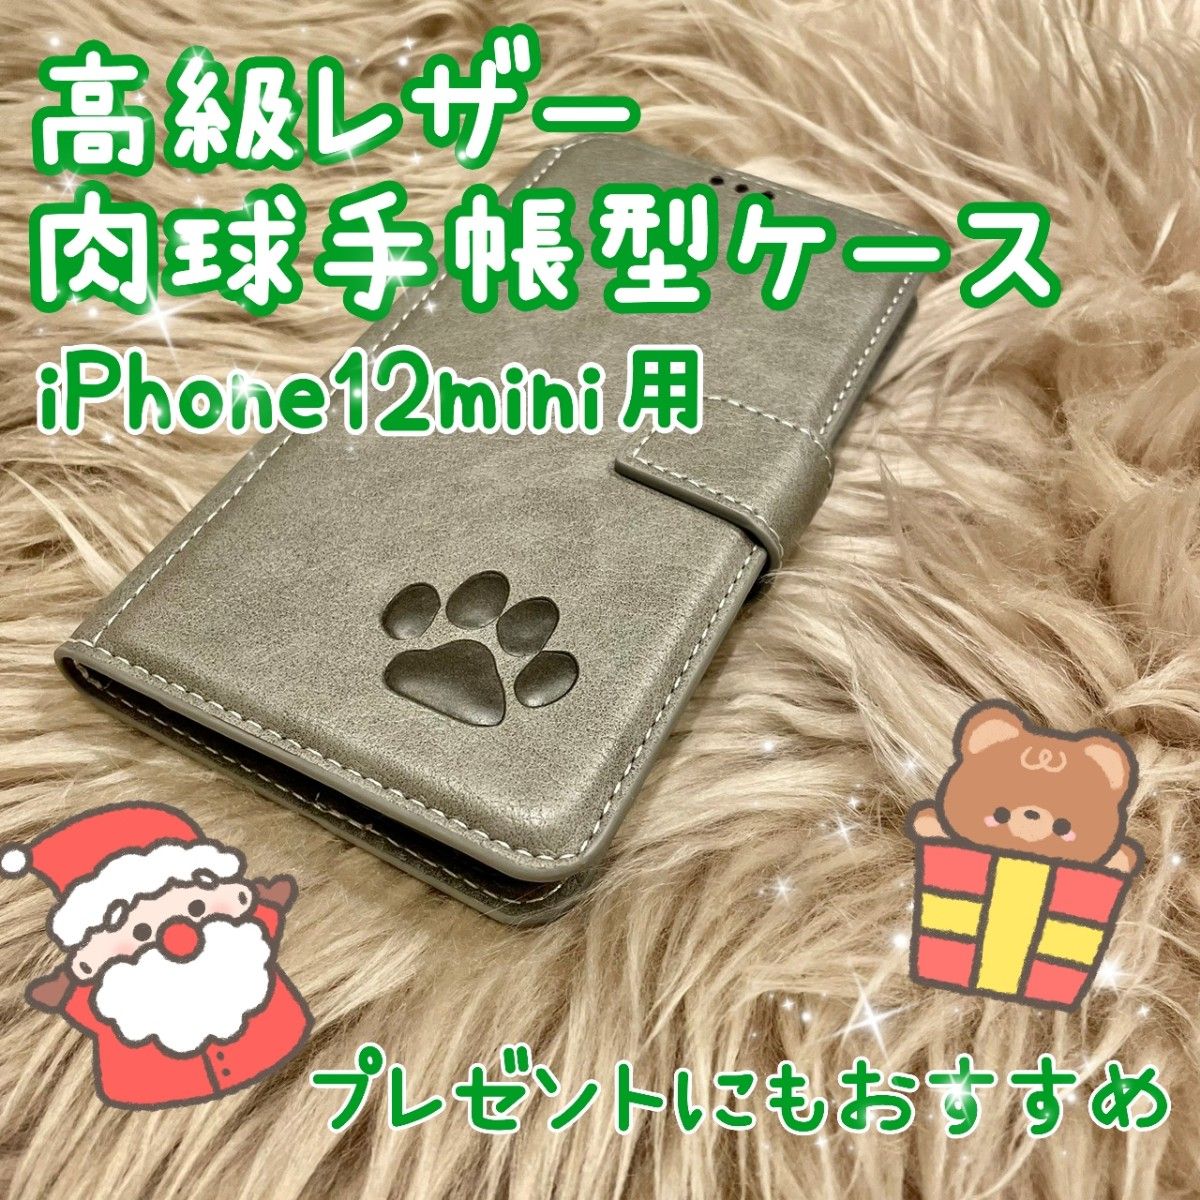 【高級レザー肉球手帳型ケース】iPhone12mini用  グレー  新品未使用  クリスマス  プレゼント  ギフト  ペア